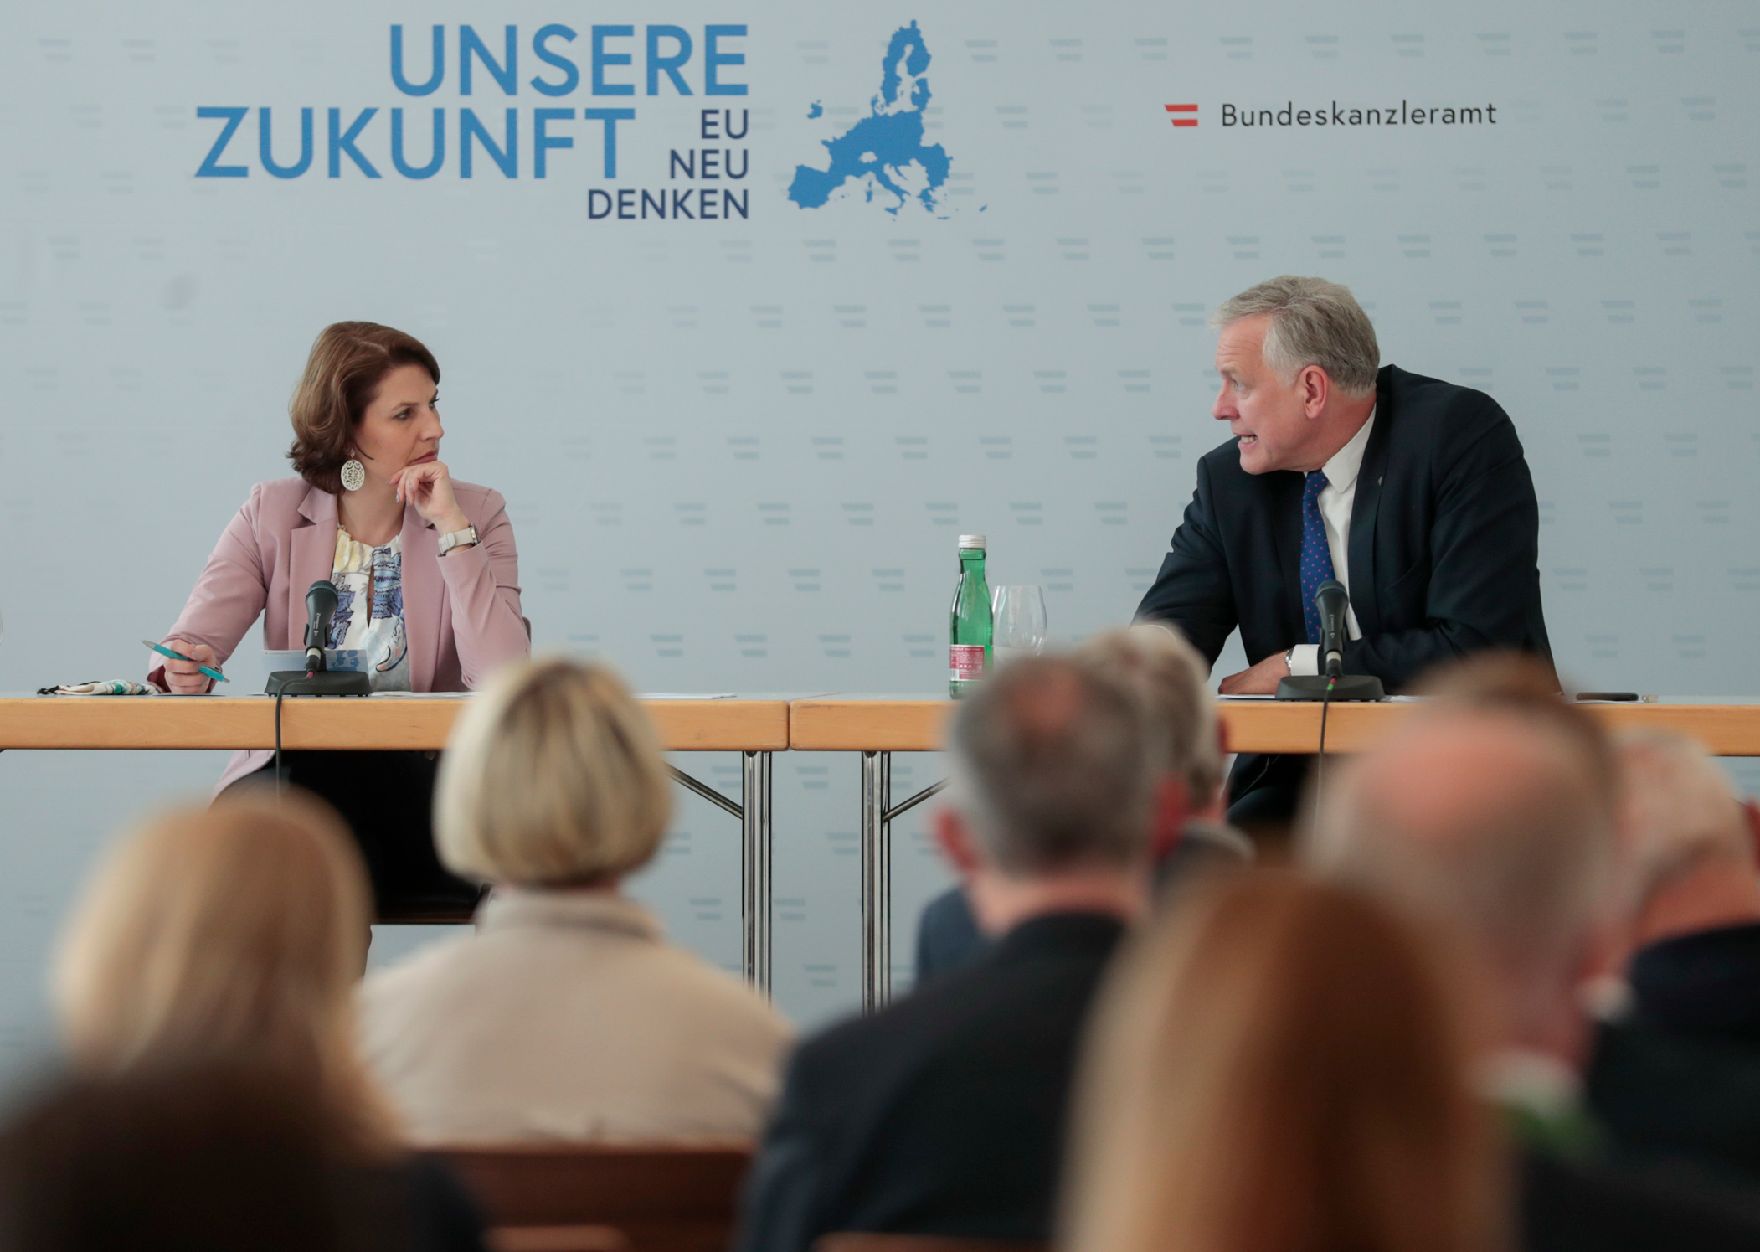 Am 26. Juni 2020 reiste Bundesministerin Karoline Edtstadler (l.) anlässlich eines Bundesländertags nach Niederösterreich. Im Bild mit dem niederösterreichischen Landesrat Martin Eichtinger (r.) beim Dialog über die Zukunft der EU mit EU-Gemeinderäten.